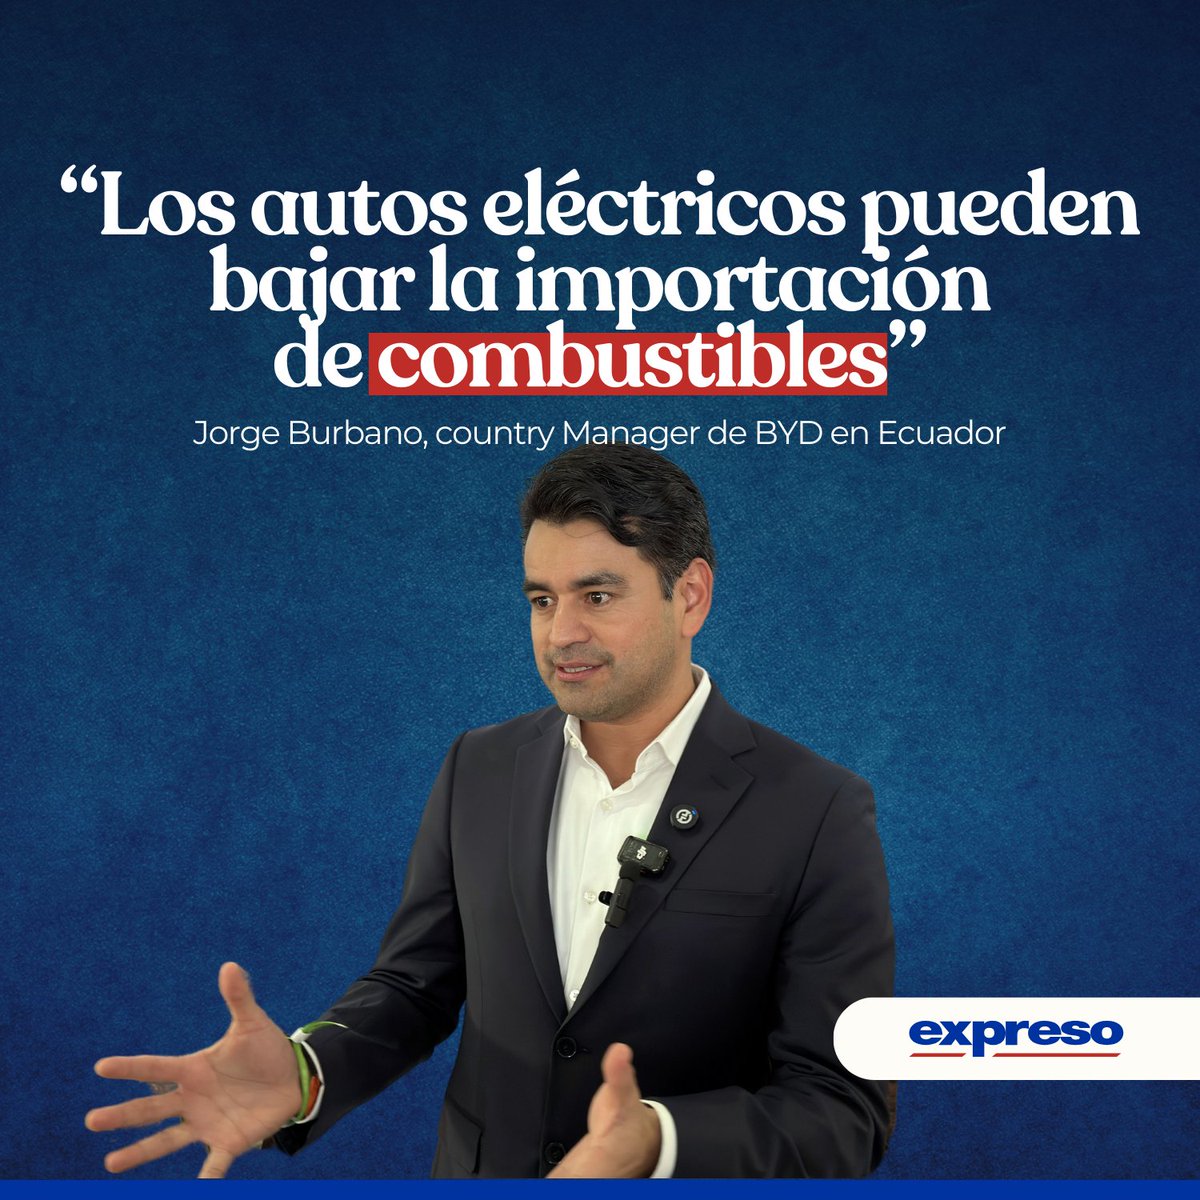 Jorge Burbano, gerente de BYD en Ecuador, explicó que la movilidad eléctrica puede ser una solución para la importación de combustibles, pese a la crisis energética. Los detalles 👉bit.ly/3QRpEaF